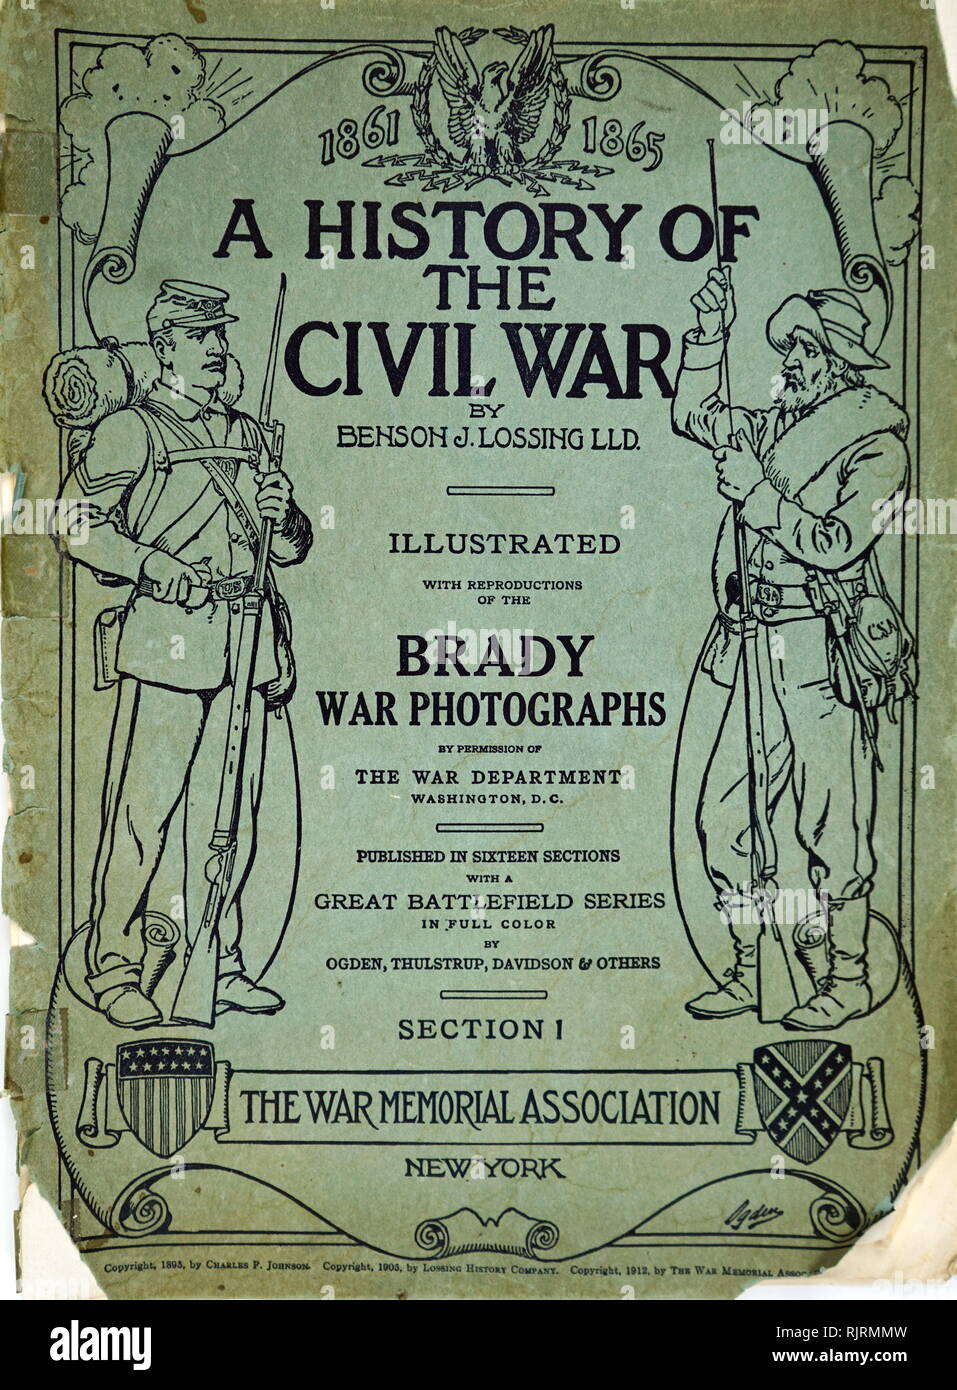 Guerre civile américaine album commémoratif de photographies par Matthew Brady. Publié 1865 Banque D'Images